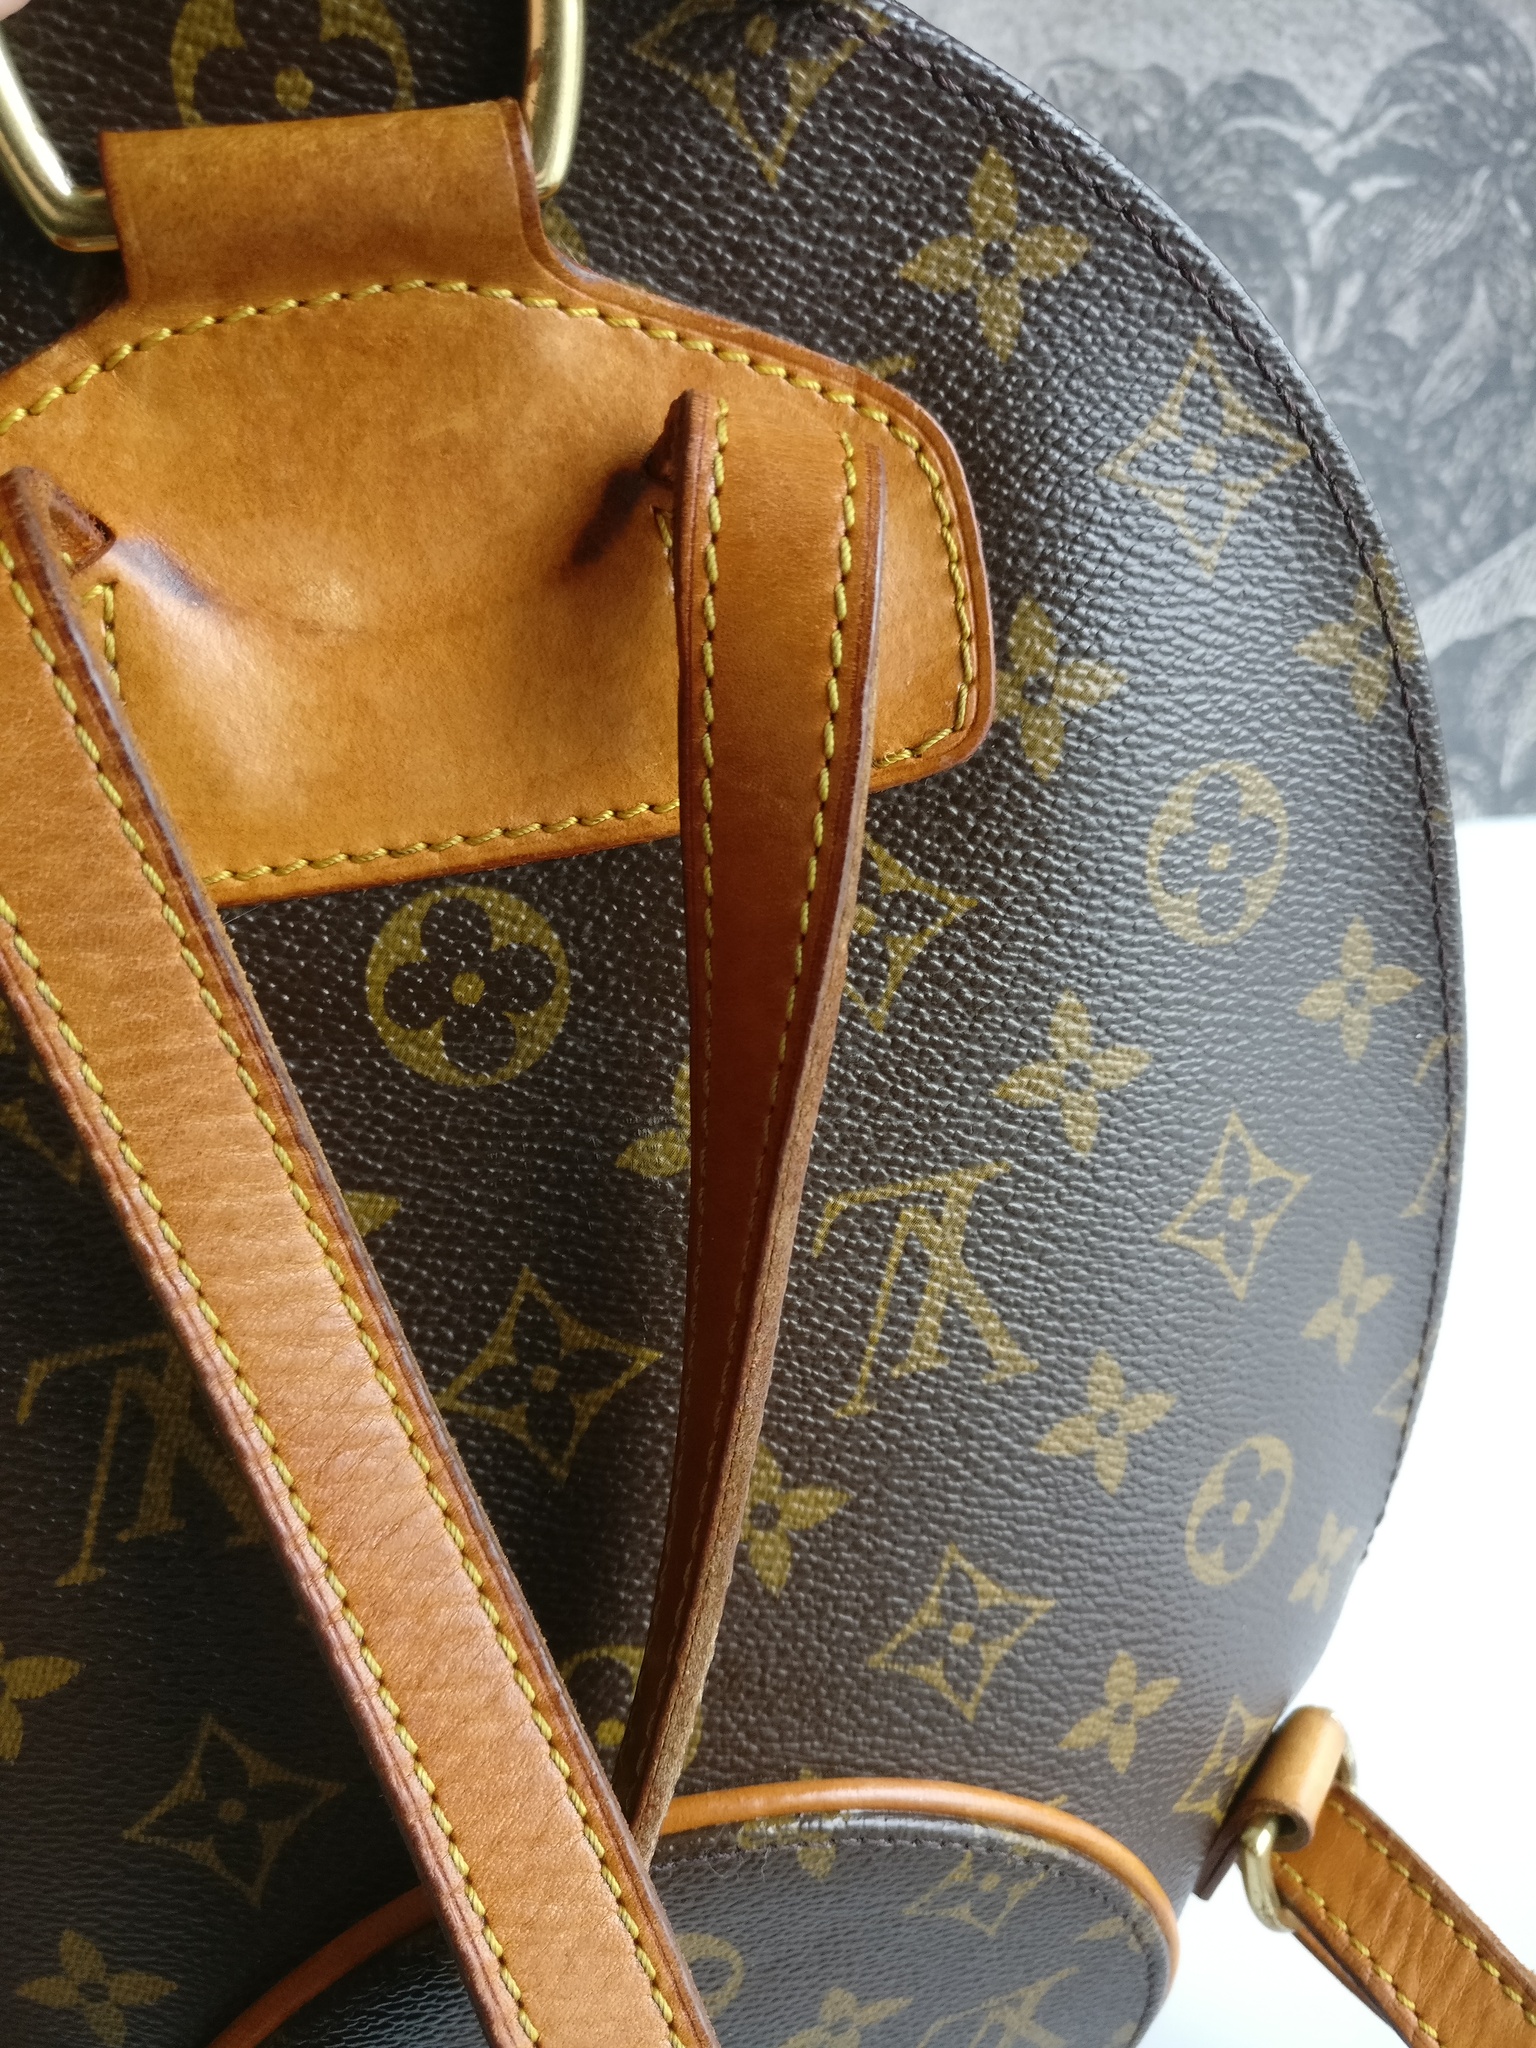 Louis Vuitton Ellipse backpack